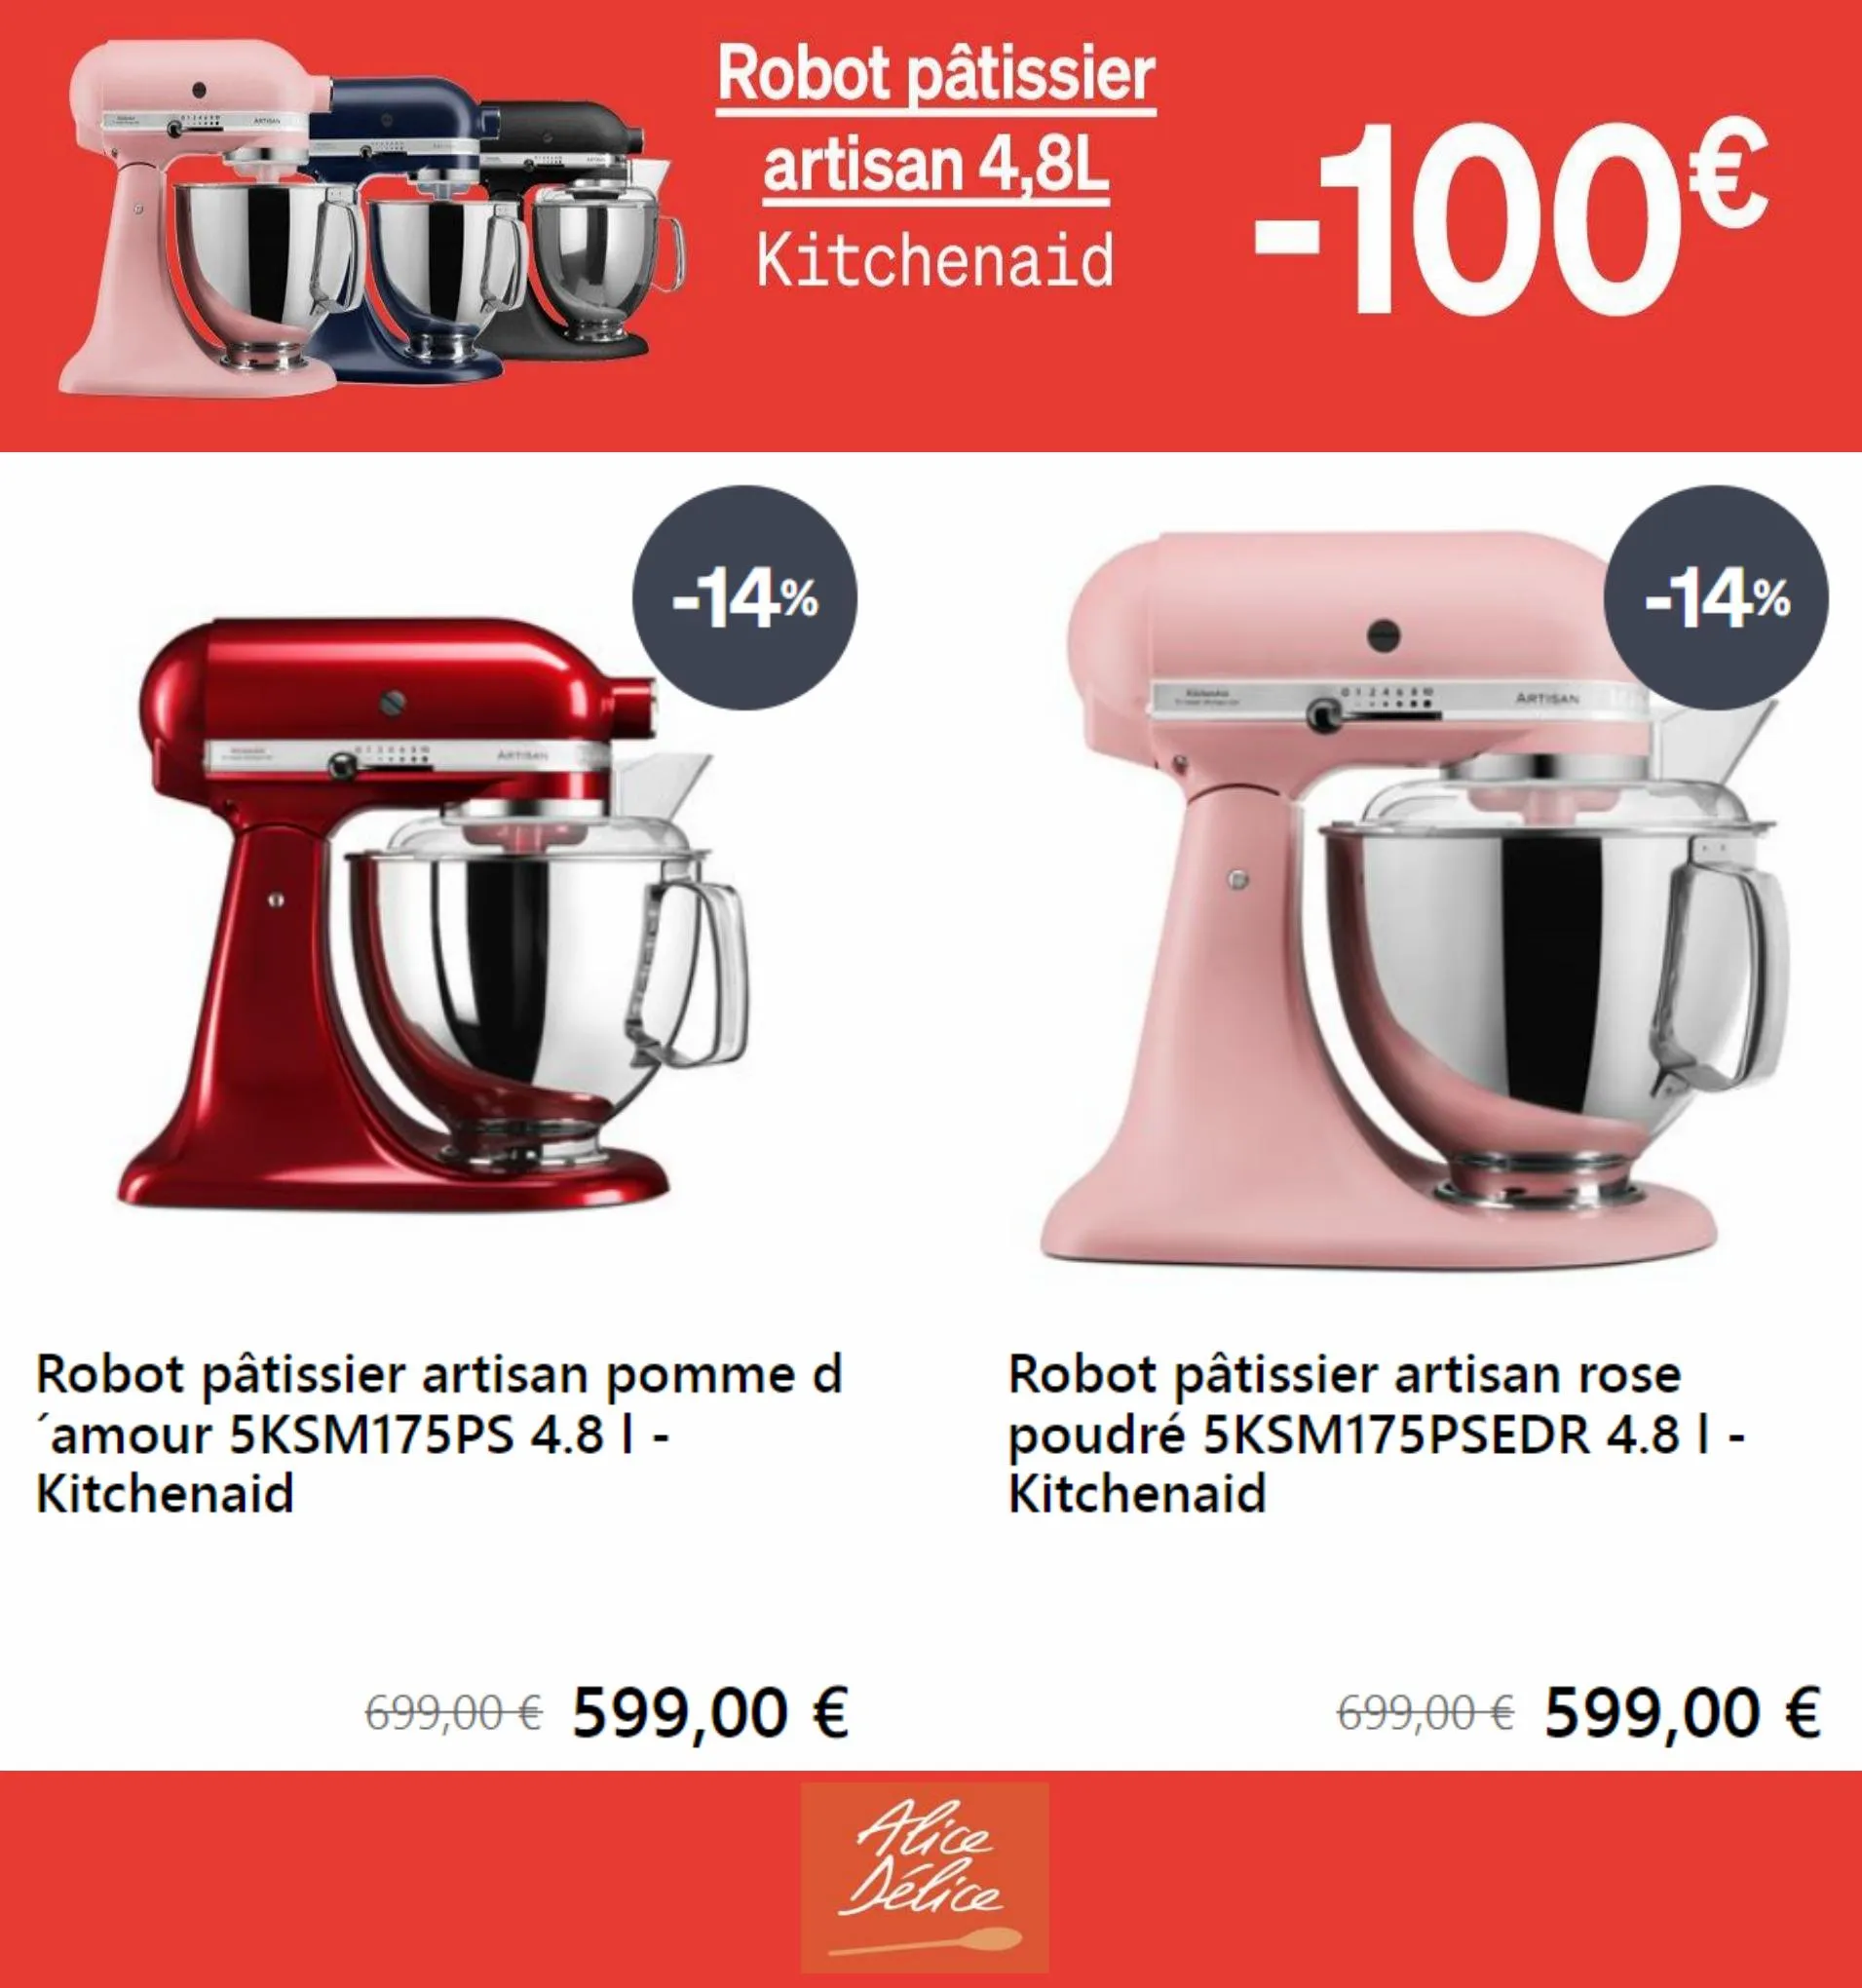 Catalogue Robot pâtisier artisan 4,8L -100€, page 00002